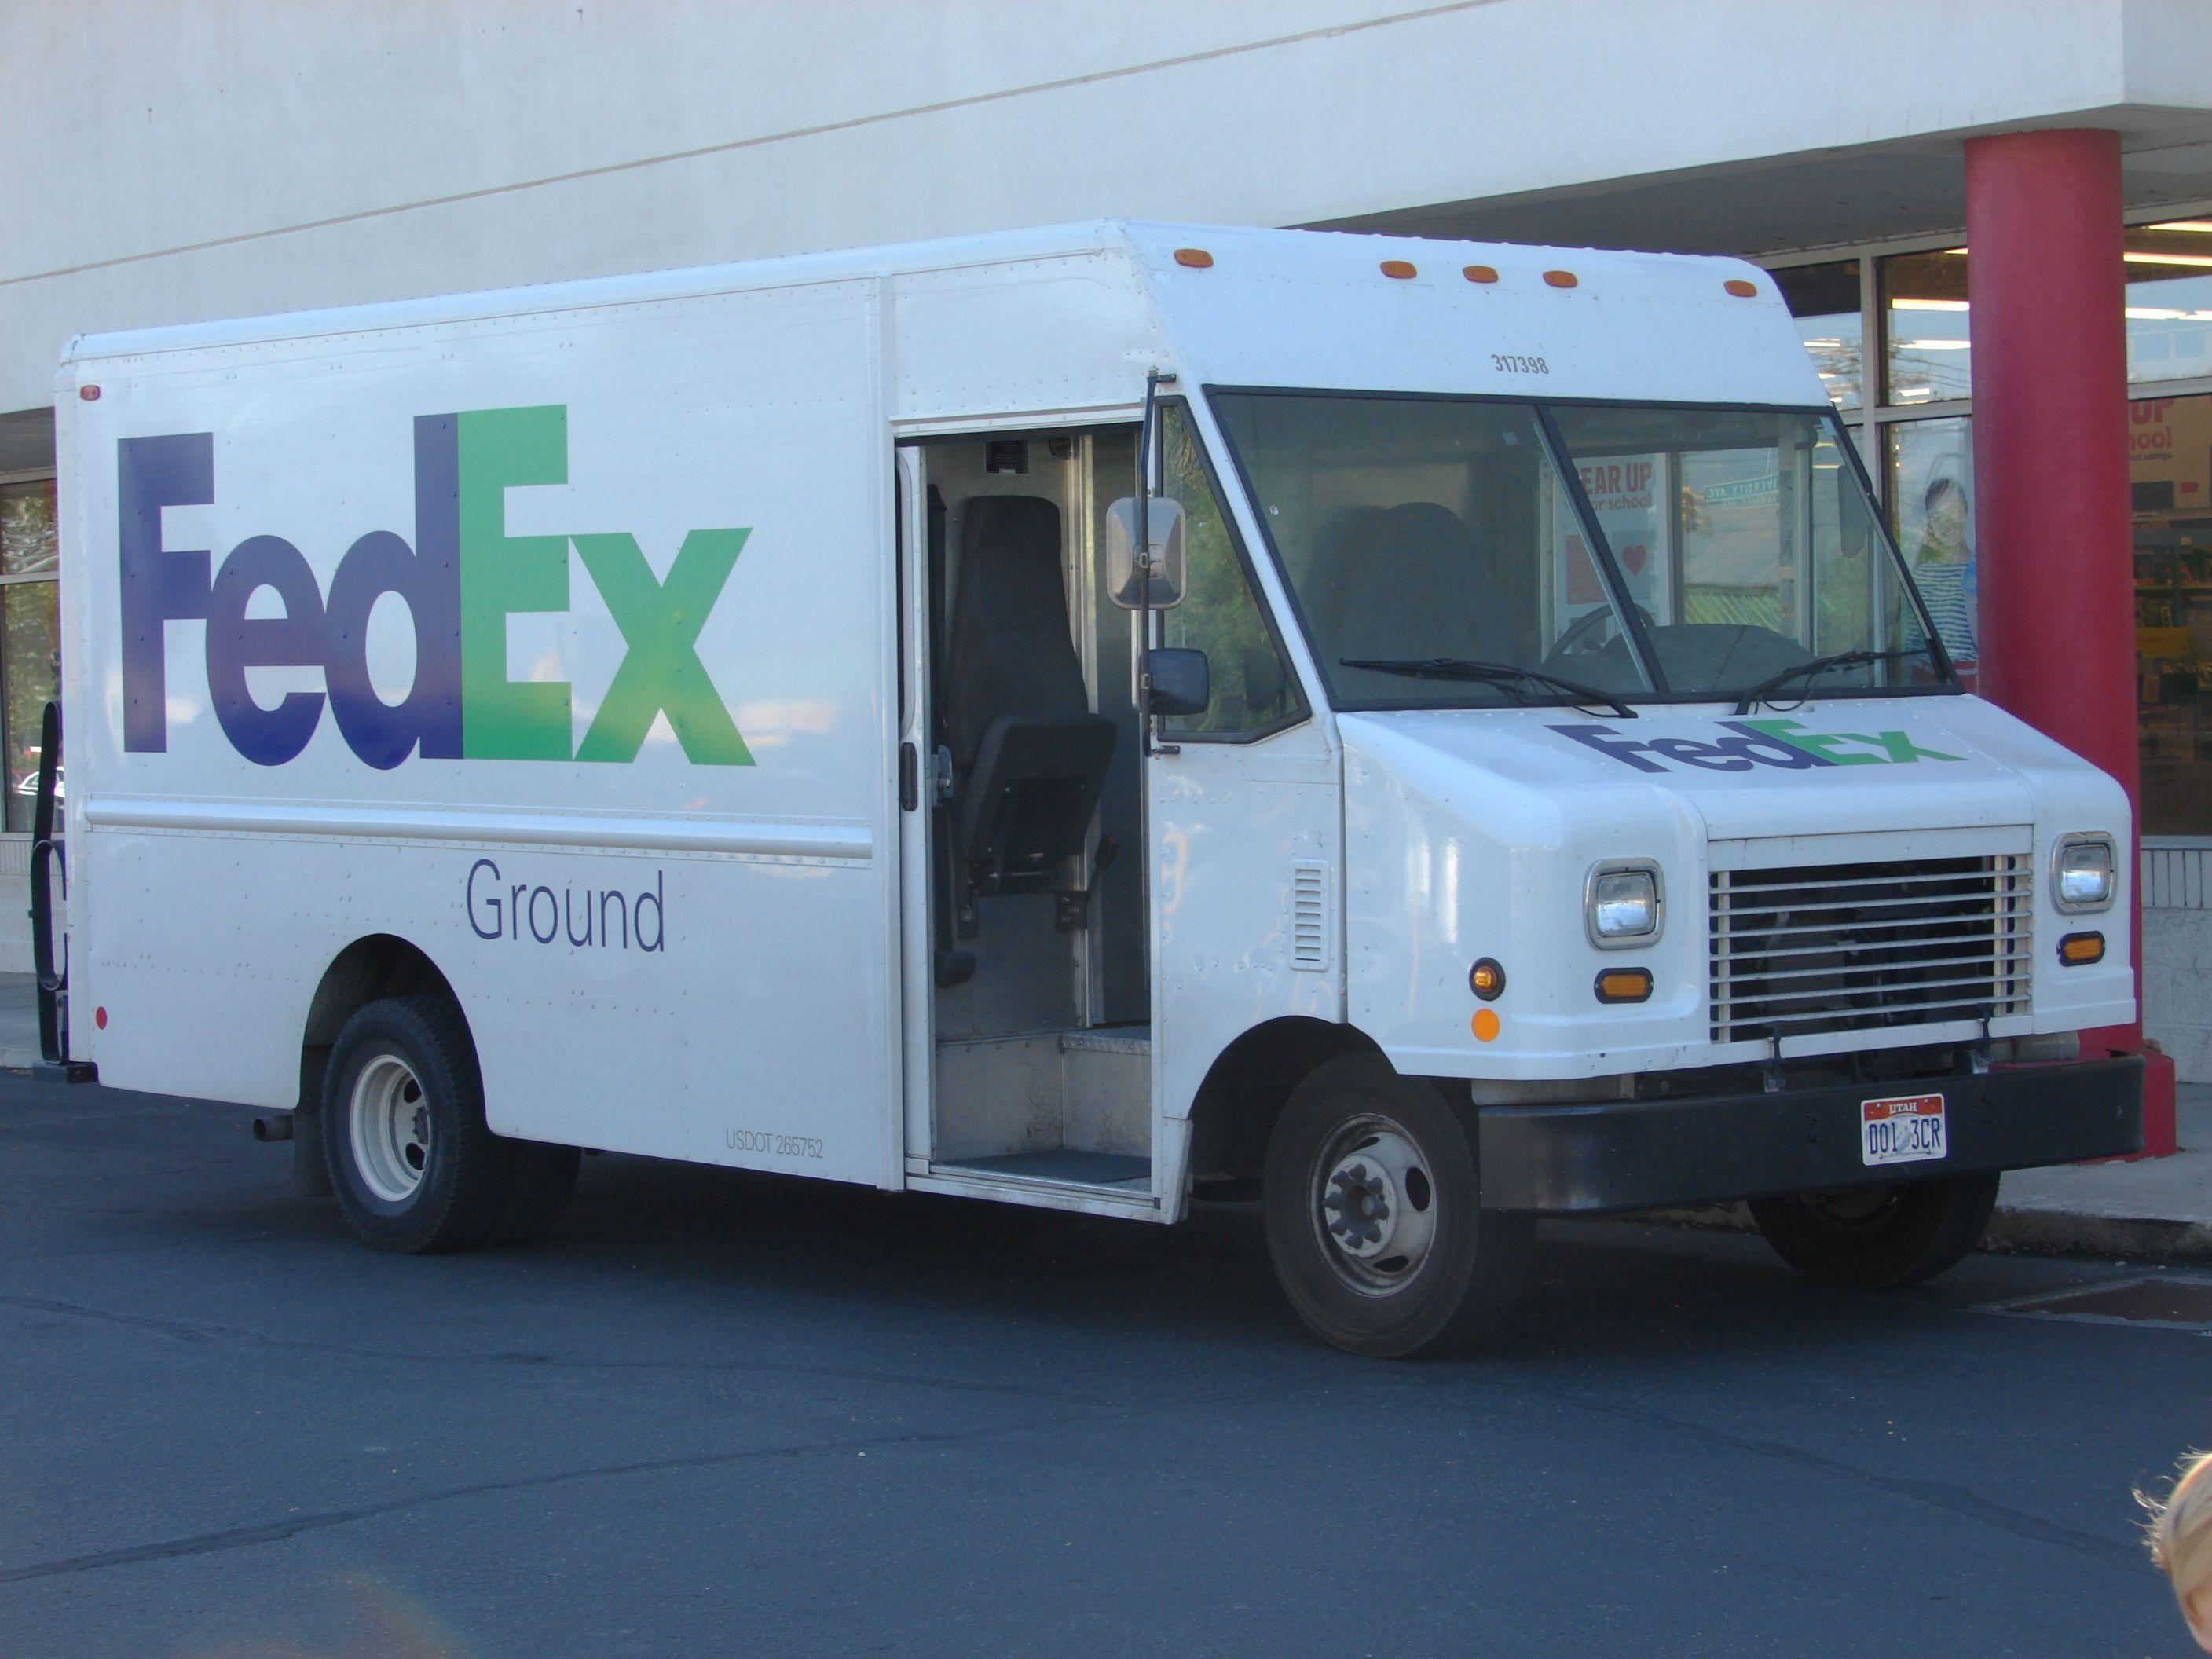 Green Van FedEx Ground Logo - FedEx Ground delivery van, Jul